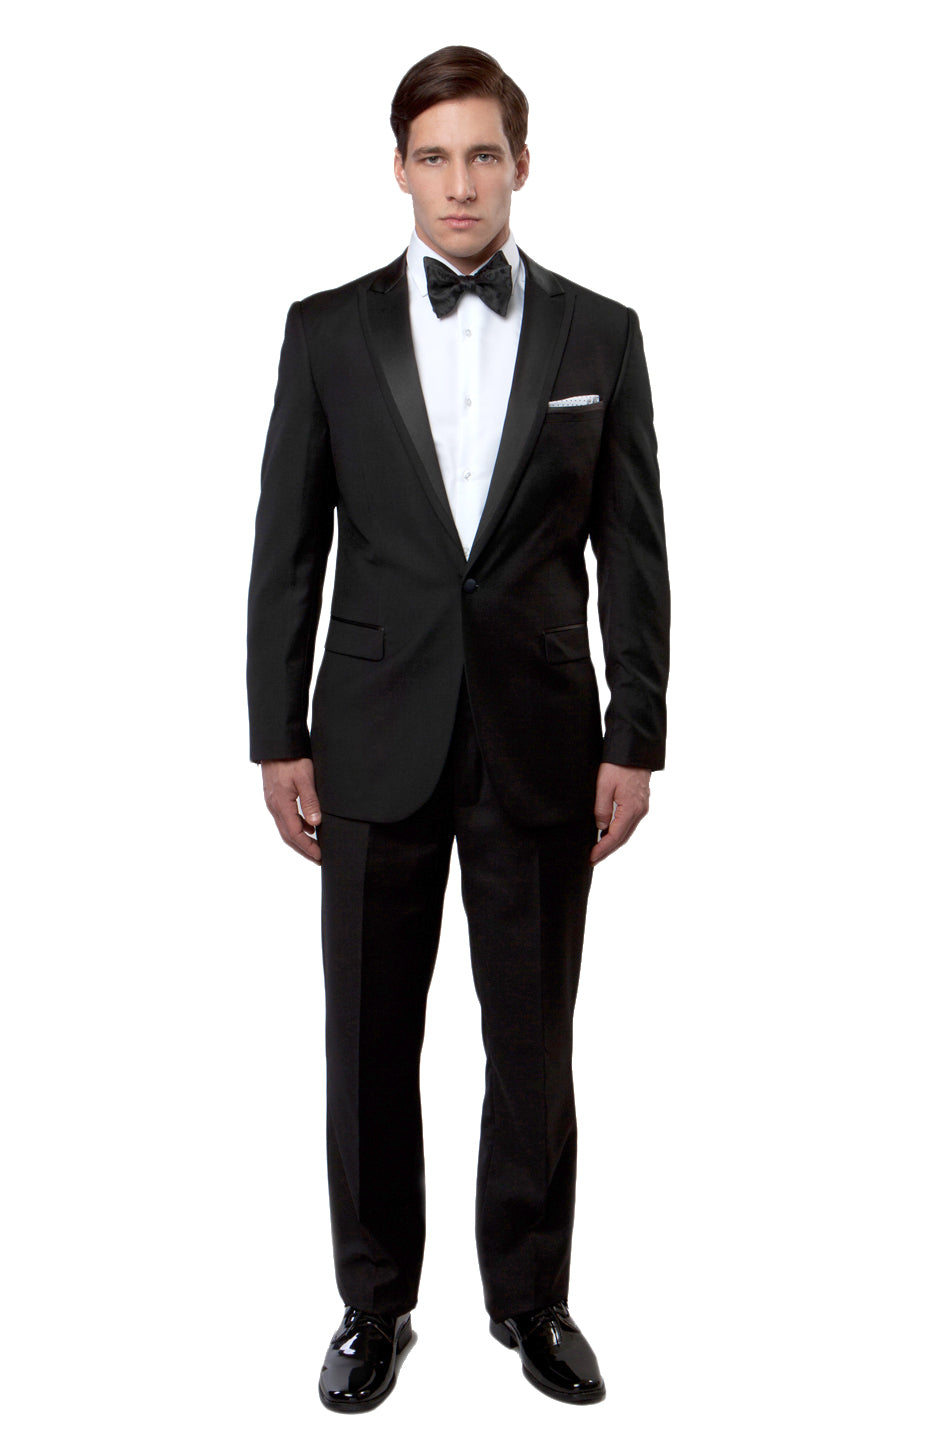 Black / Black Satin Bryan Michaels Satin Peak Lapel With Trim Tuxedo Solid Slim Fit Prom Tuxedo For Men MT187S-01 - Hattitude